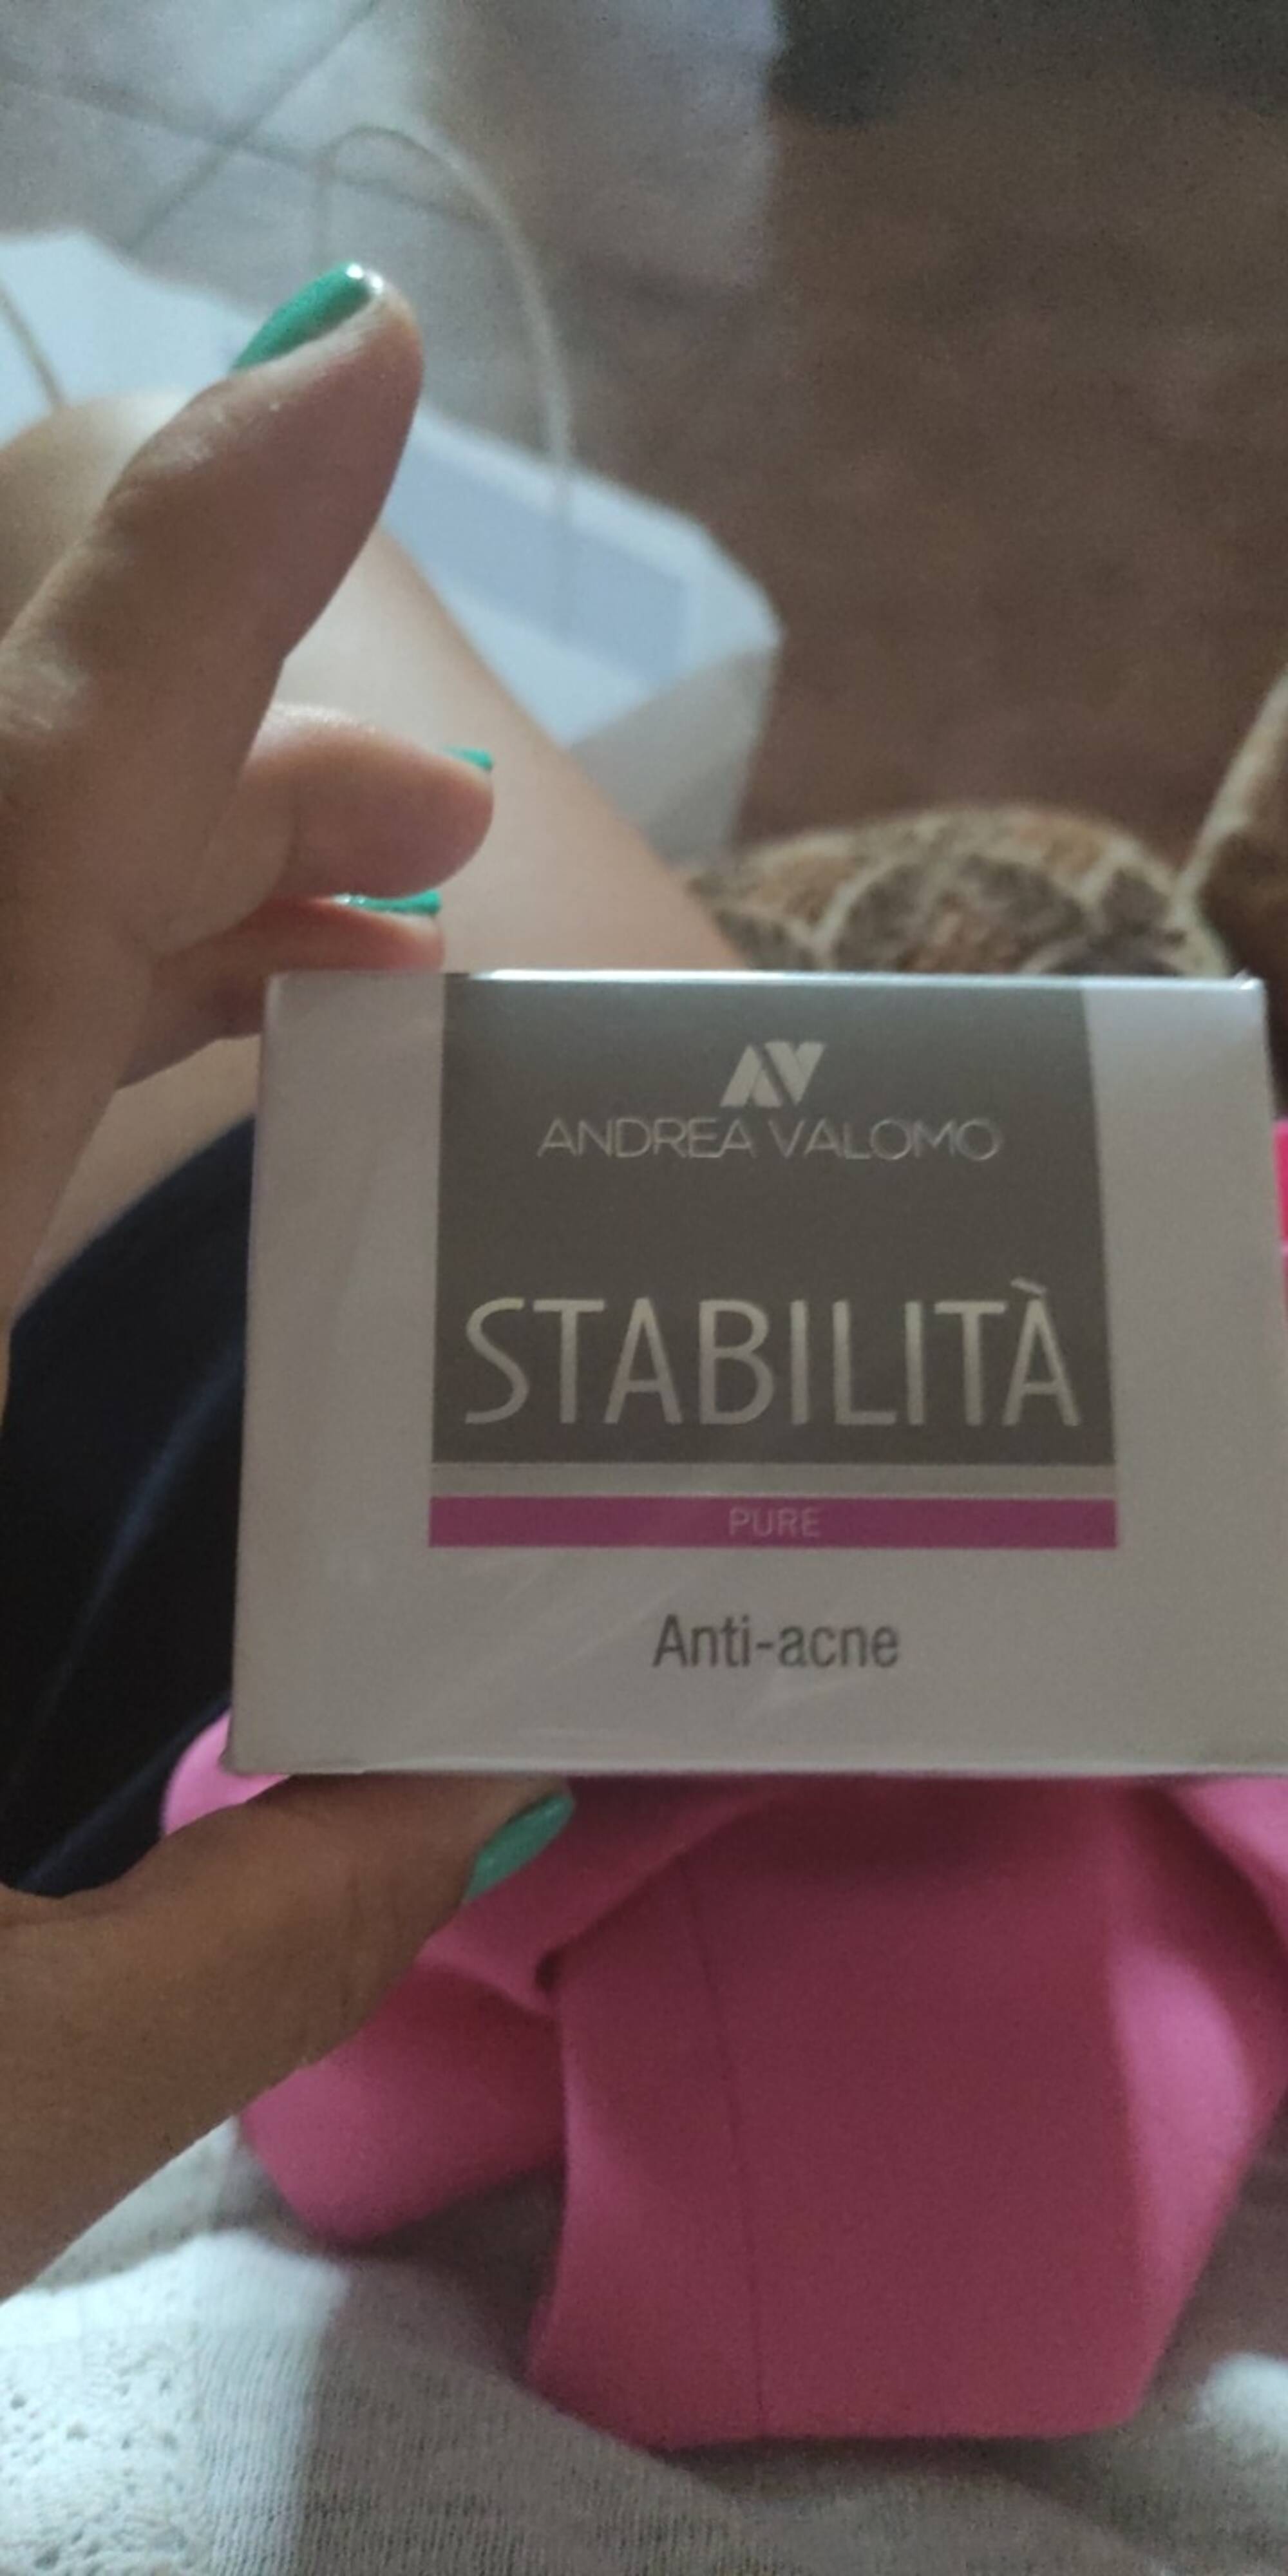 ANDREA VALOMO - Stabilita pure - Anti-acne